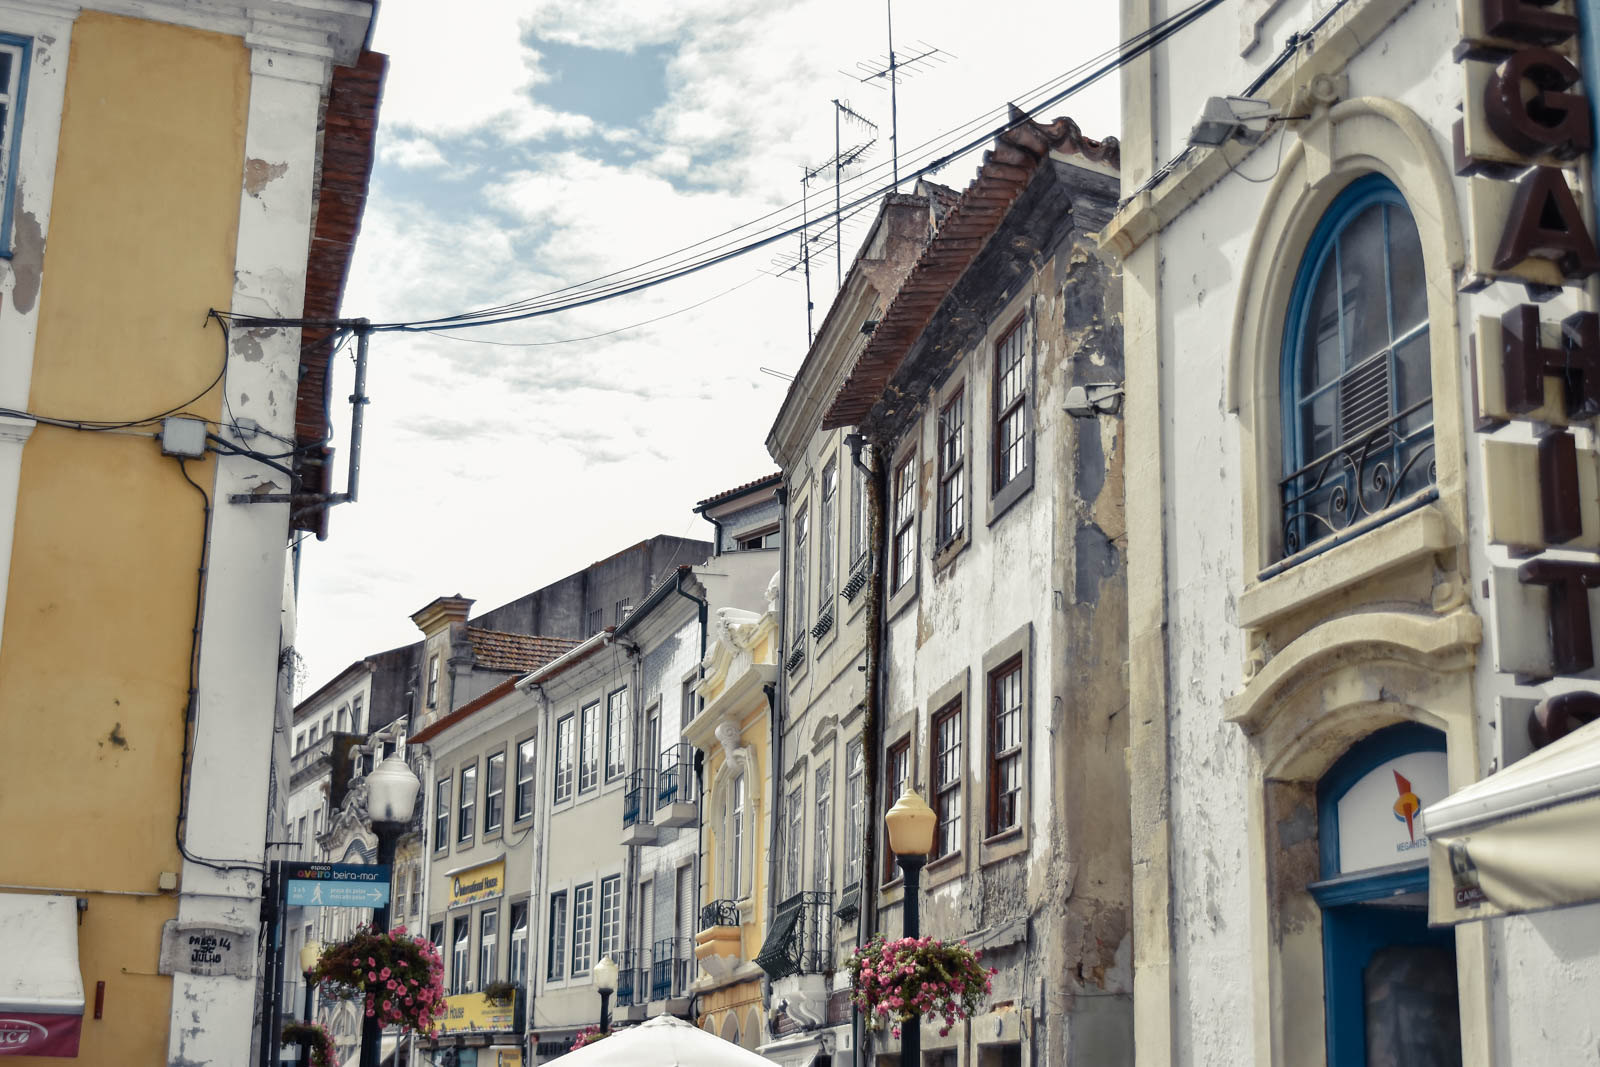 el-blog-de-silvia-rodriguez-street-style-travel-portugal-aveiro-abrigo-lila-blogger-influencer